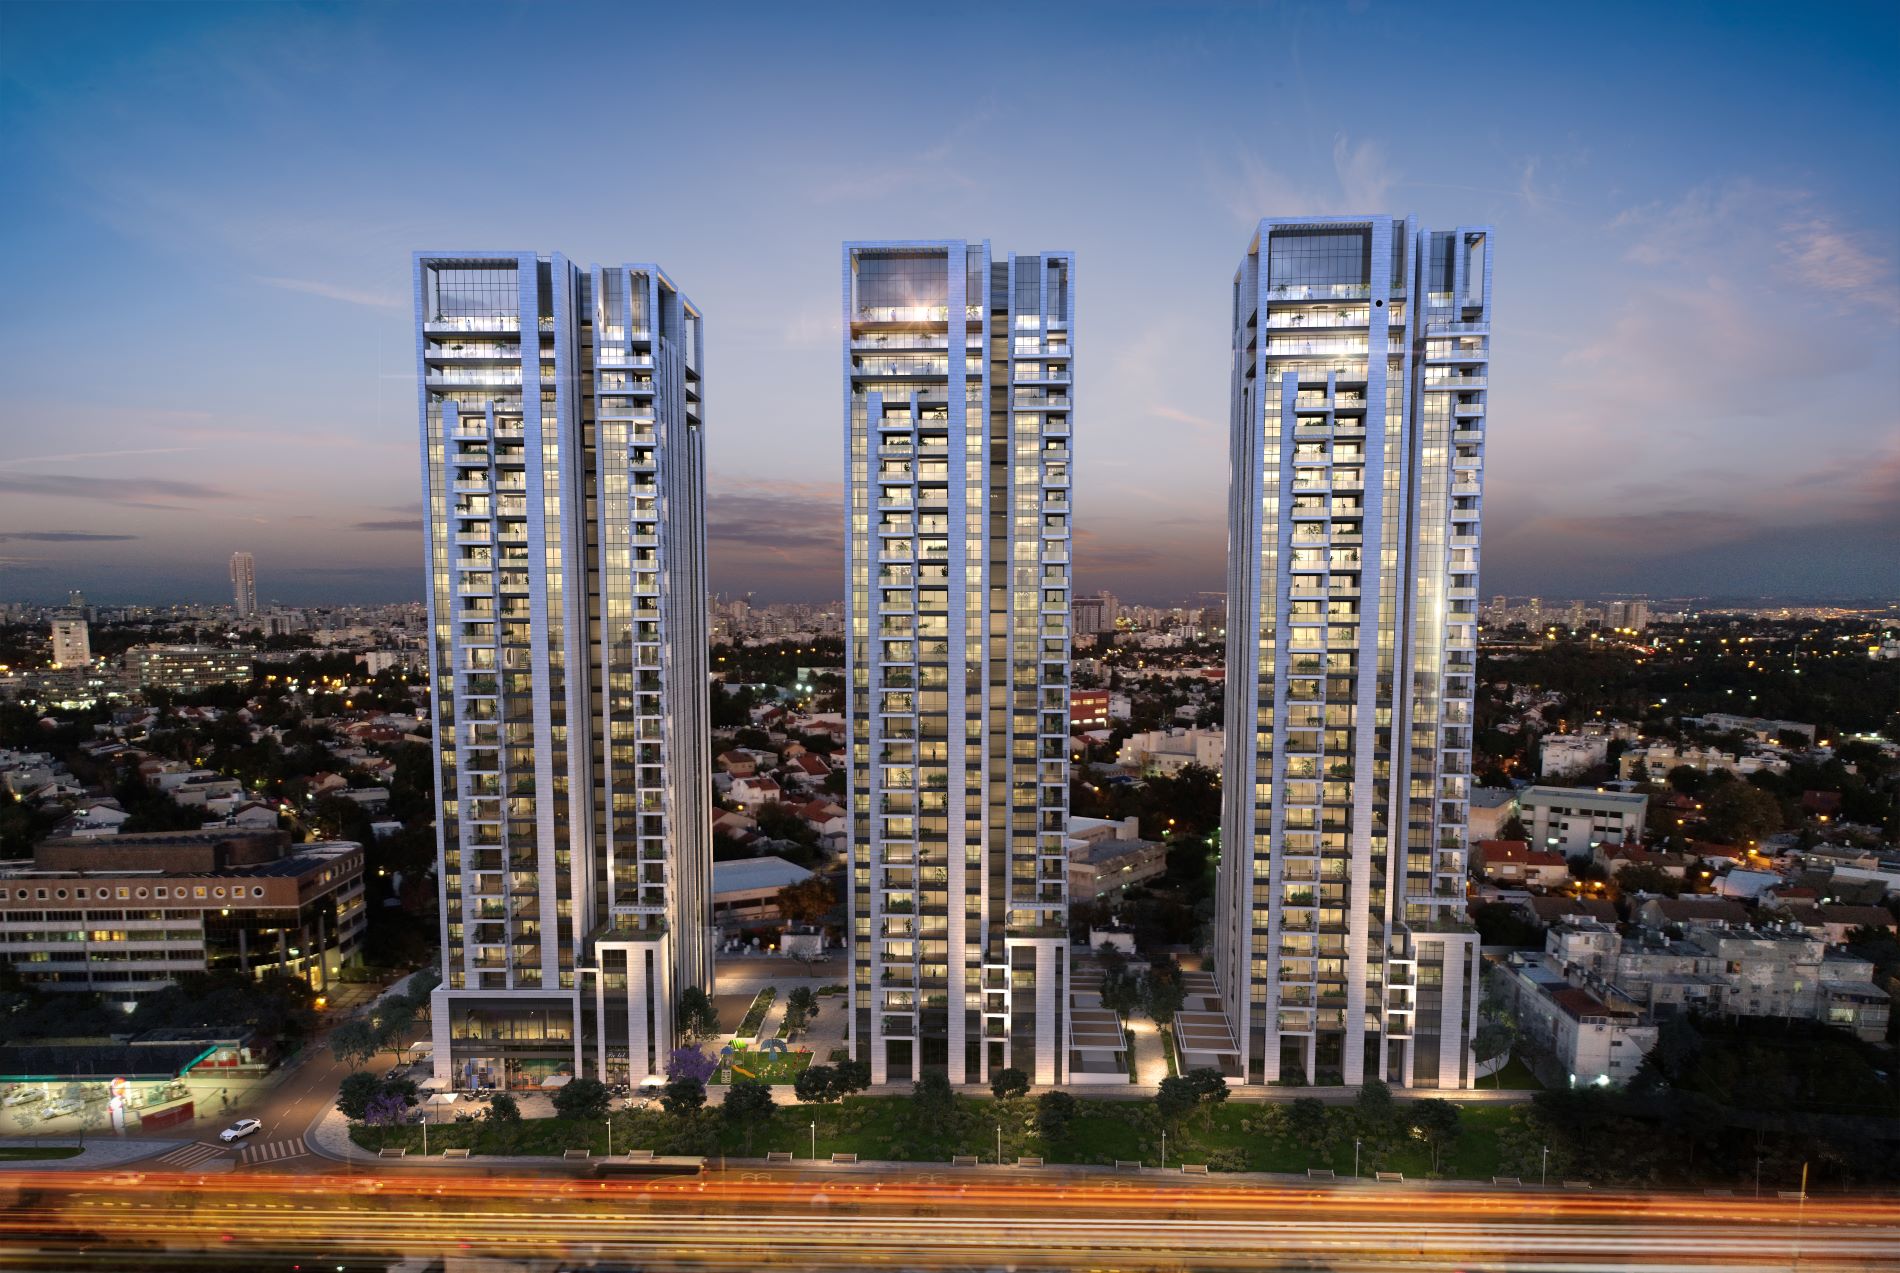 פרוייקט אאורה רמת חן החדשה ברמת גן - 3 בנייני מגורים רבי-קומות בתאורת לילה.